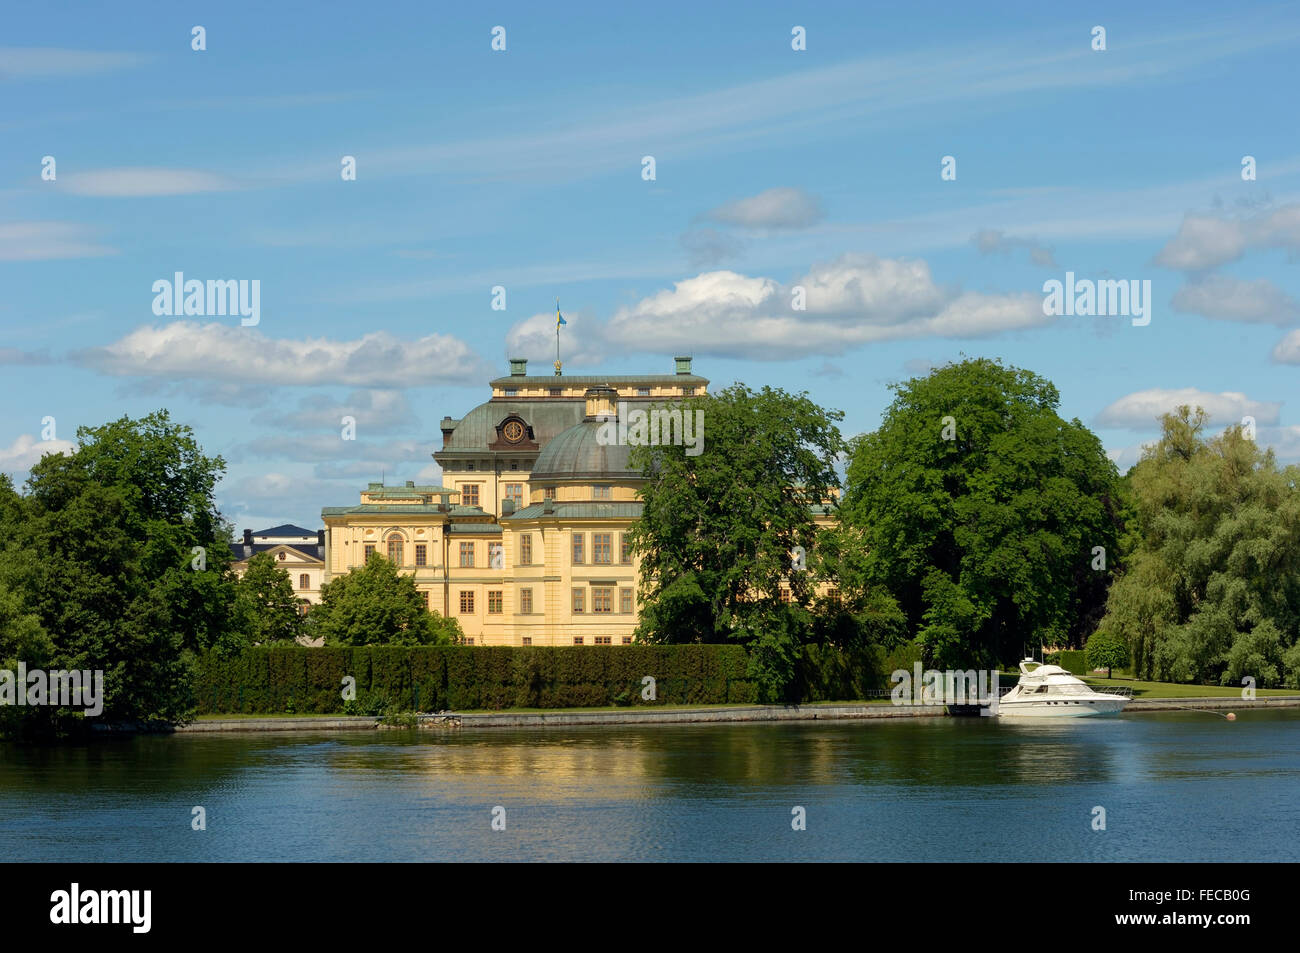 Drottningholm Palace (Drottningholms Slott). Lovön Island. Sweden Stock Photo